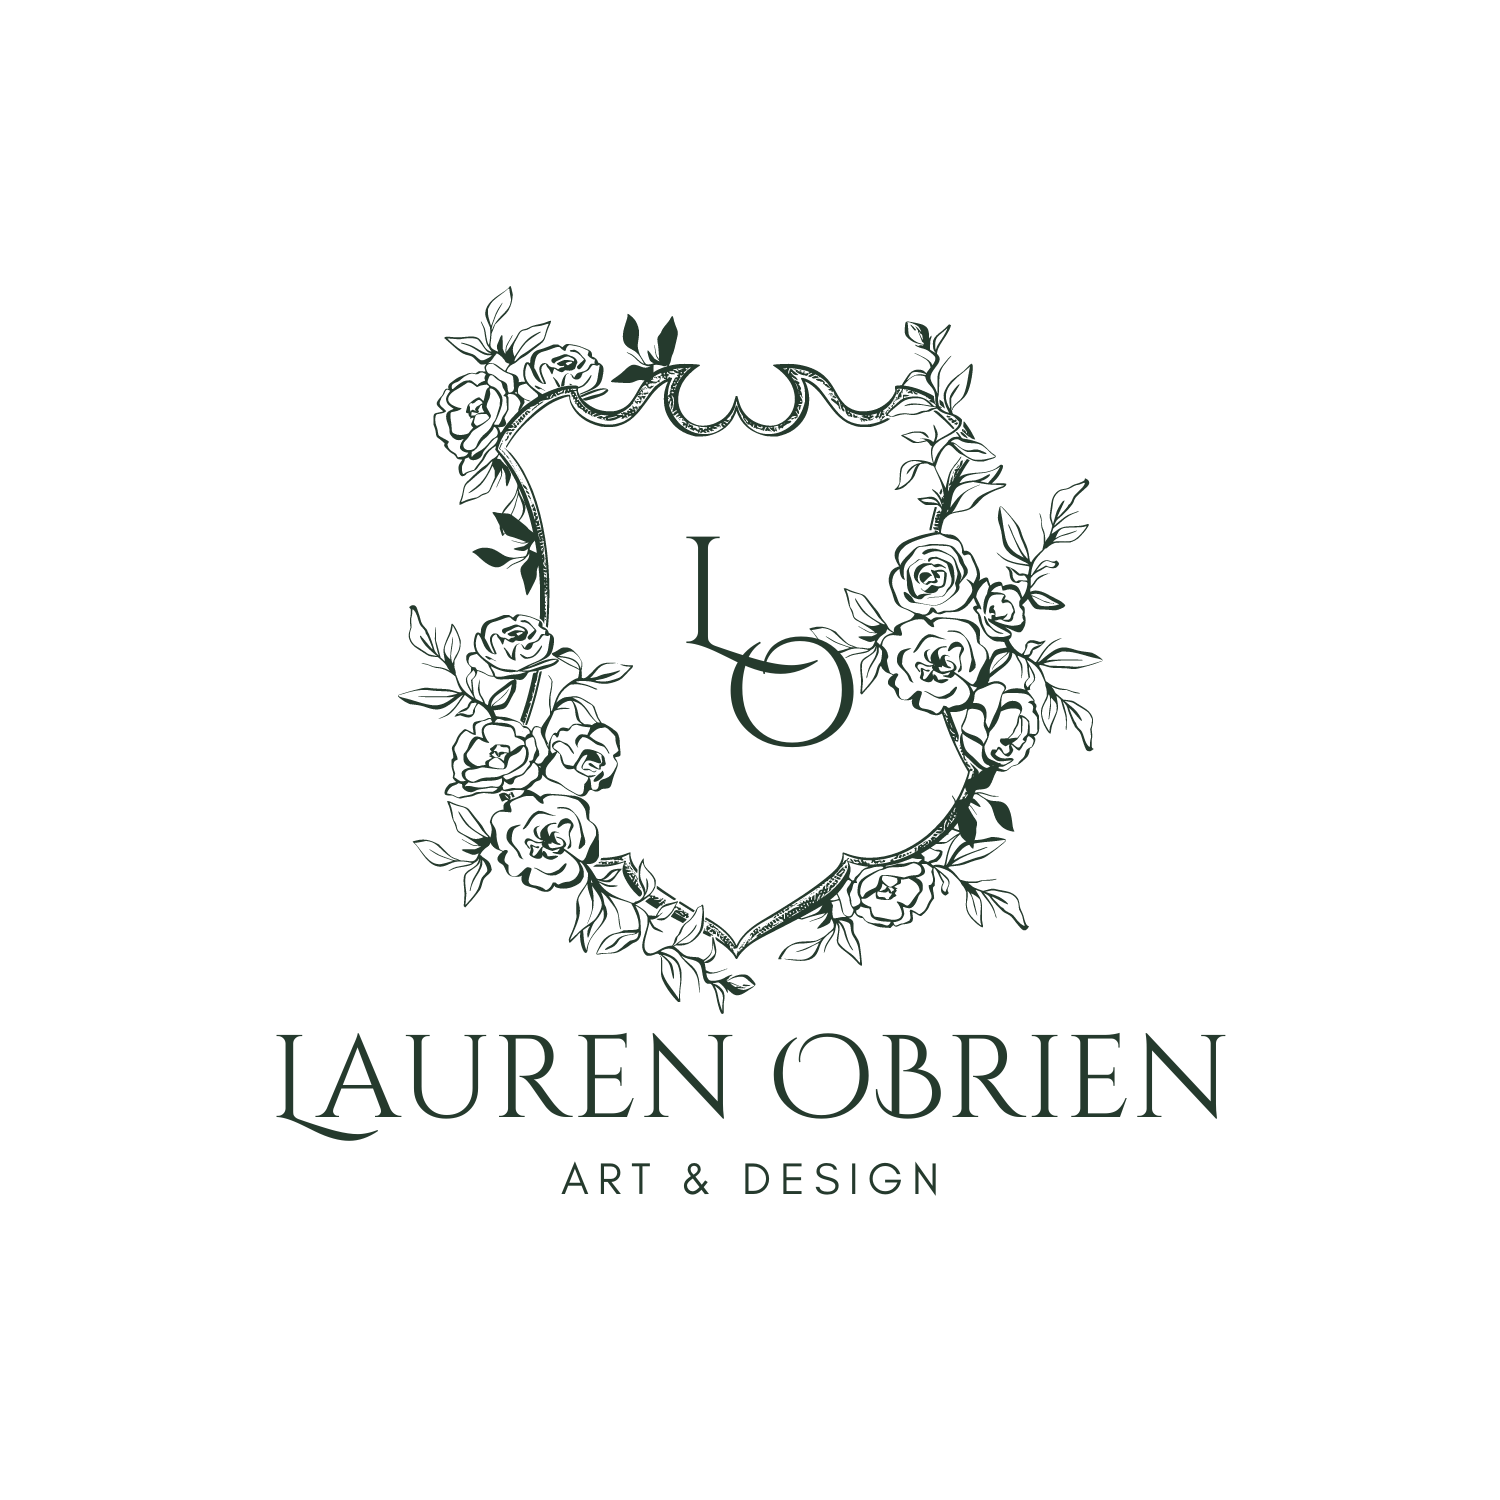 Lauren OBrien Art